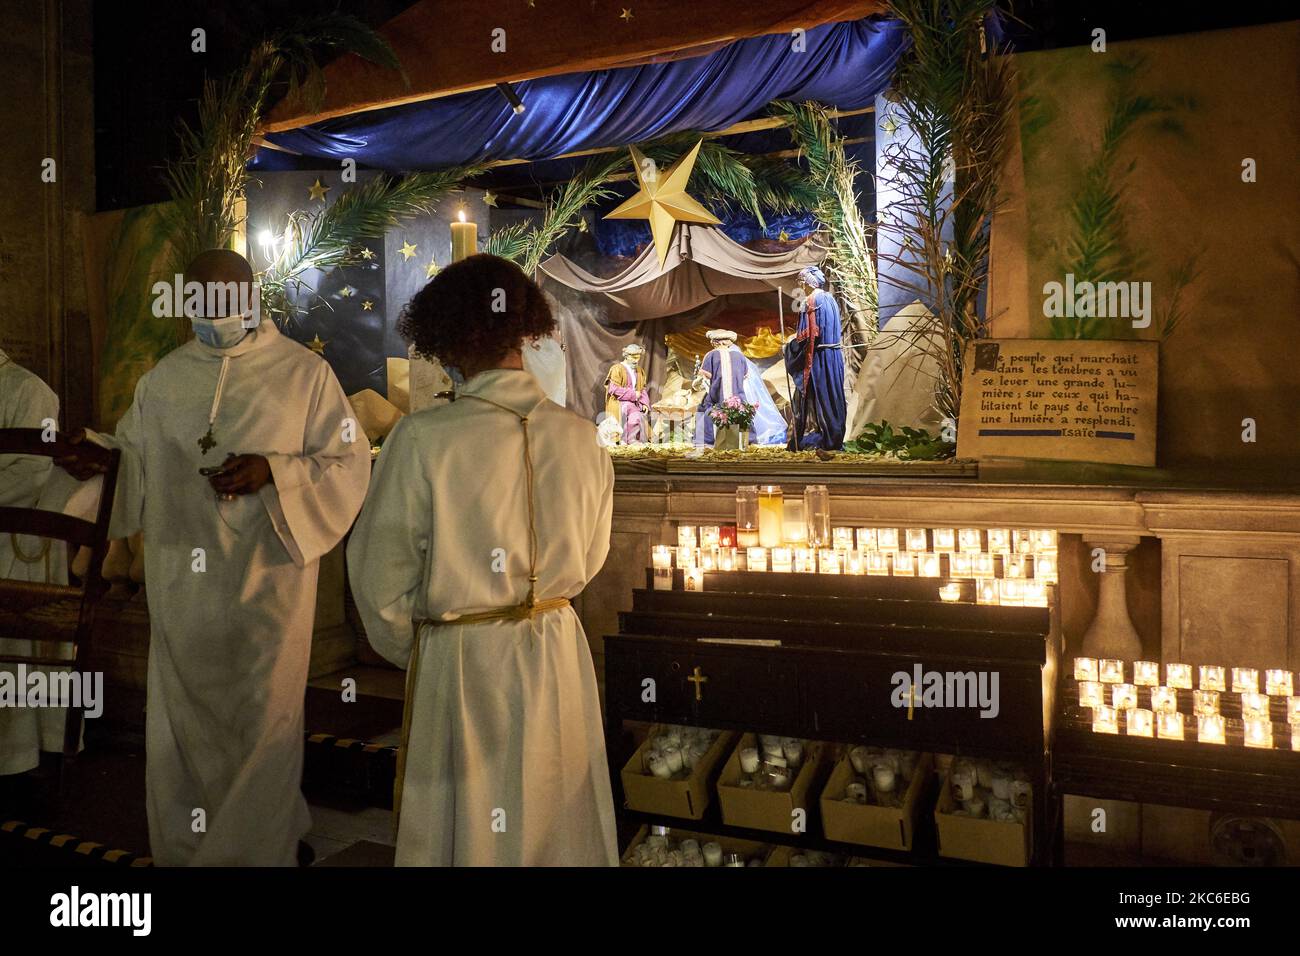 Les gens assistent à la messe de minuit à l'église Saint-Sulpice à Paris sur 24 décembre 2020, malgré la pandémie Covid-19. La Messe de minuit est la messe traditionnelle des catholiques qui précède le jour de Noël, la veille de Noël. (Photo par Adnan Farzat/NurPhoto) Banque D'Images